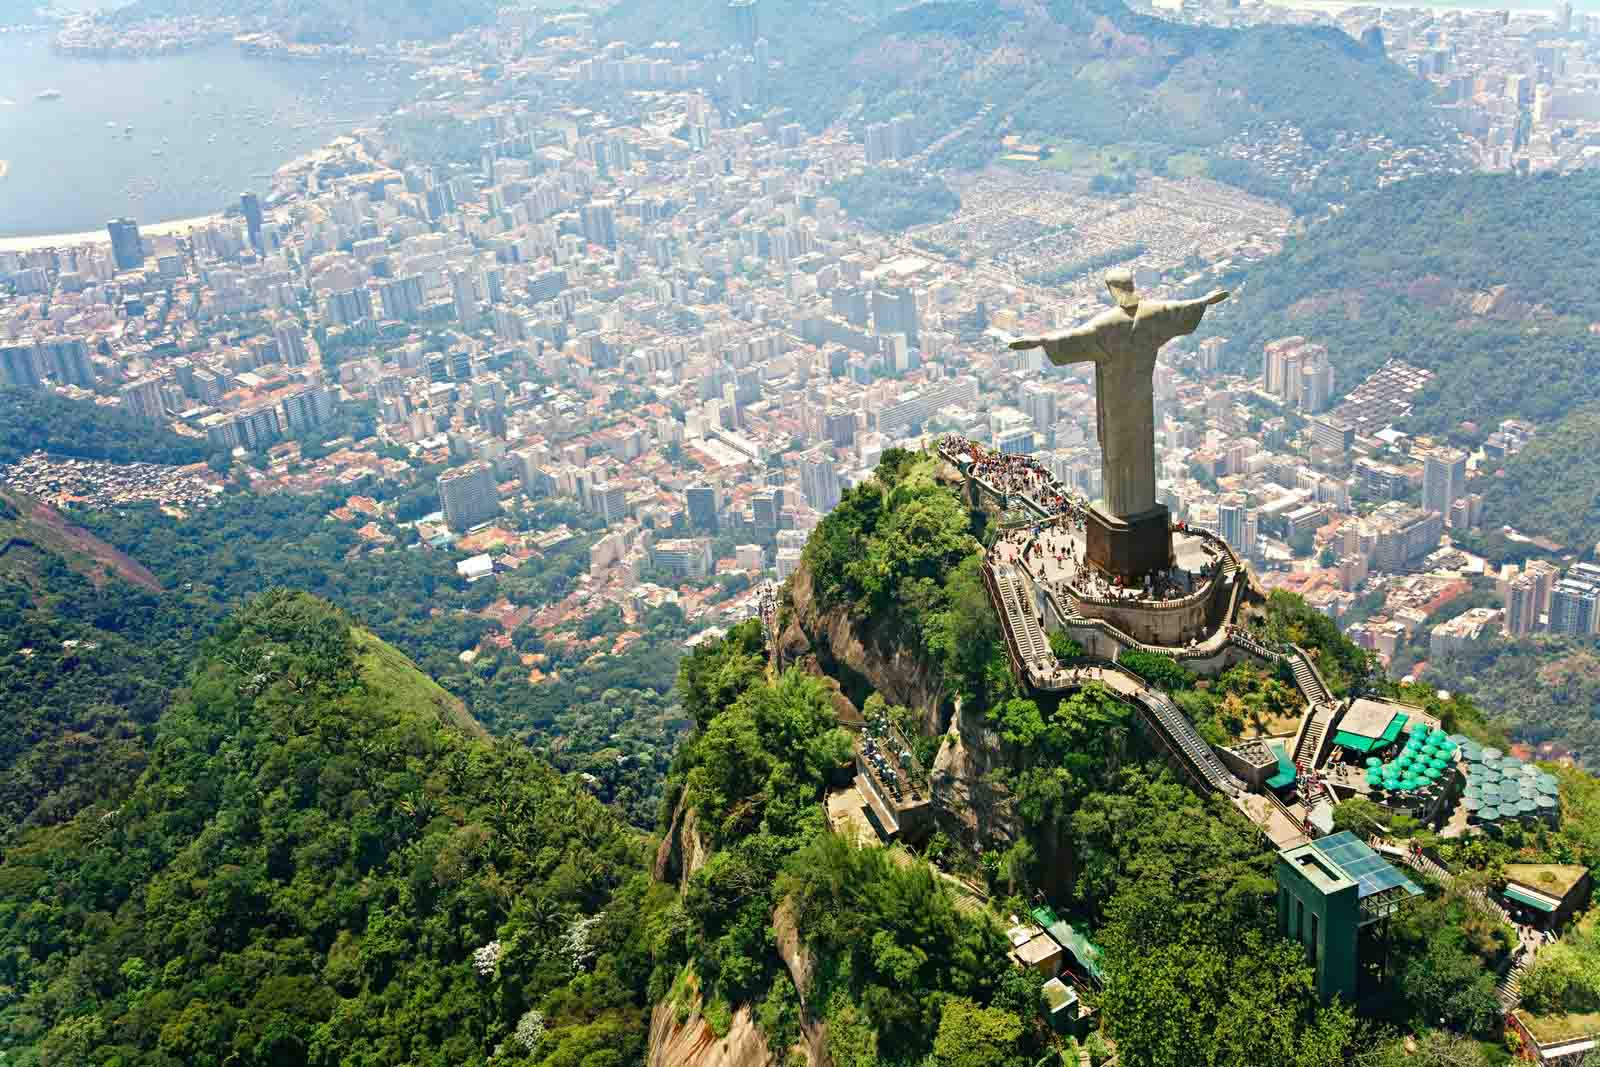 Concorvado Hill, Christ the redeemer, Rio de Janeiro, Brazil